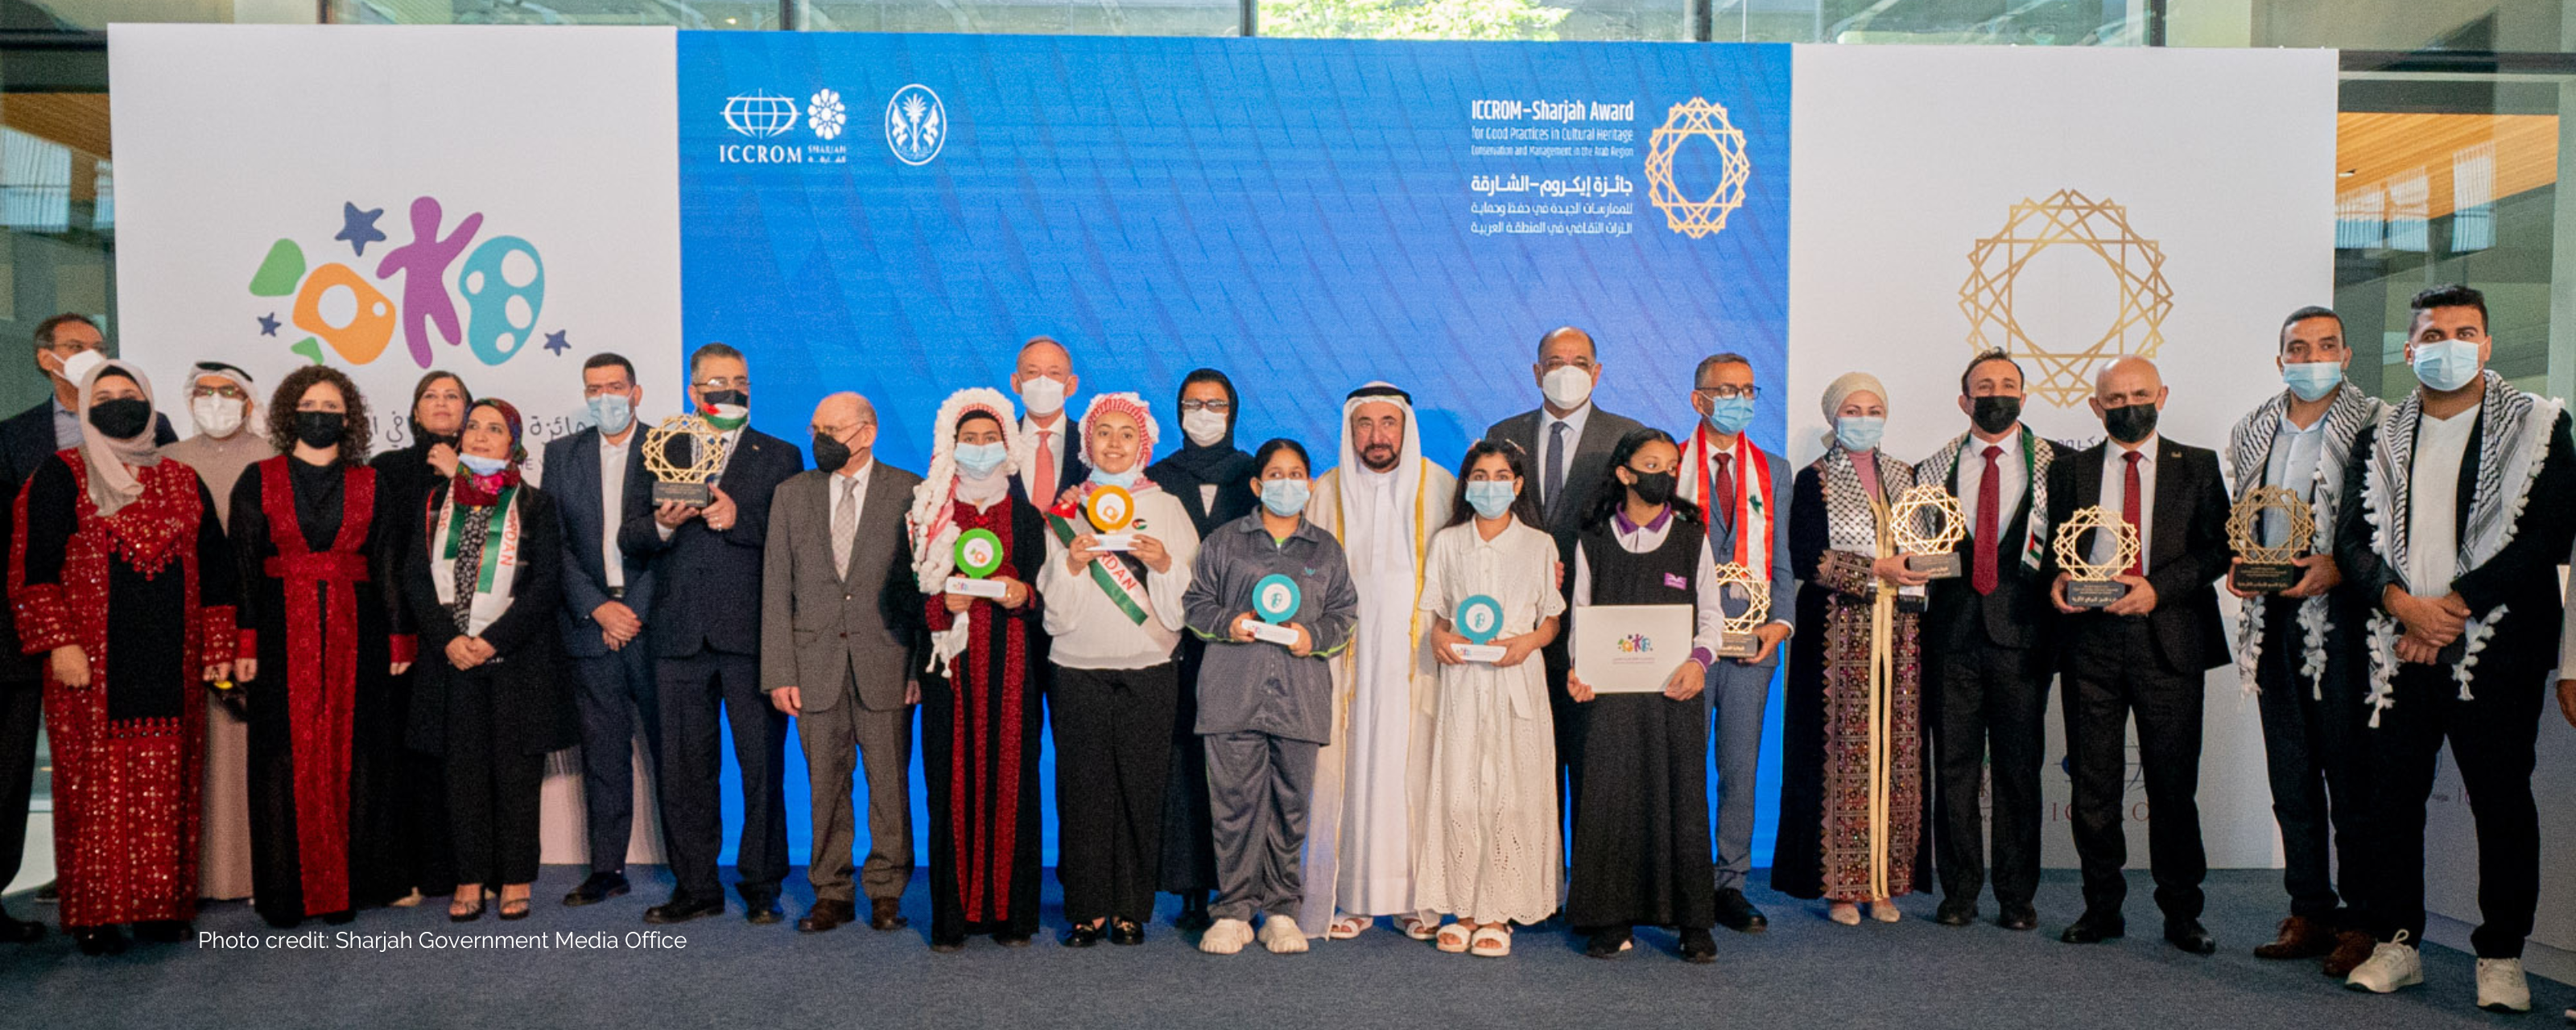 Nella foto i giovani vincitori del Premio del patrimonio culturale arabo per i giovani, che ha assegnato il primo posto nelle categorie disegno, fotografia, danza popolare e film. Crediti fotografici: Ufficio stampa del governo di Sharjah 